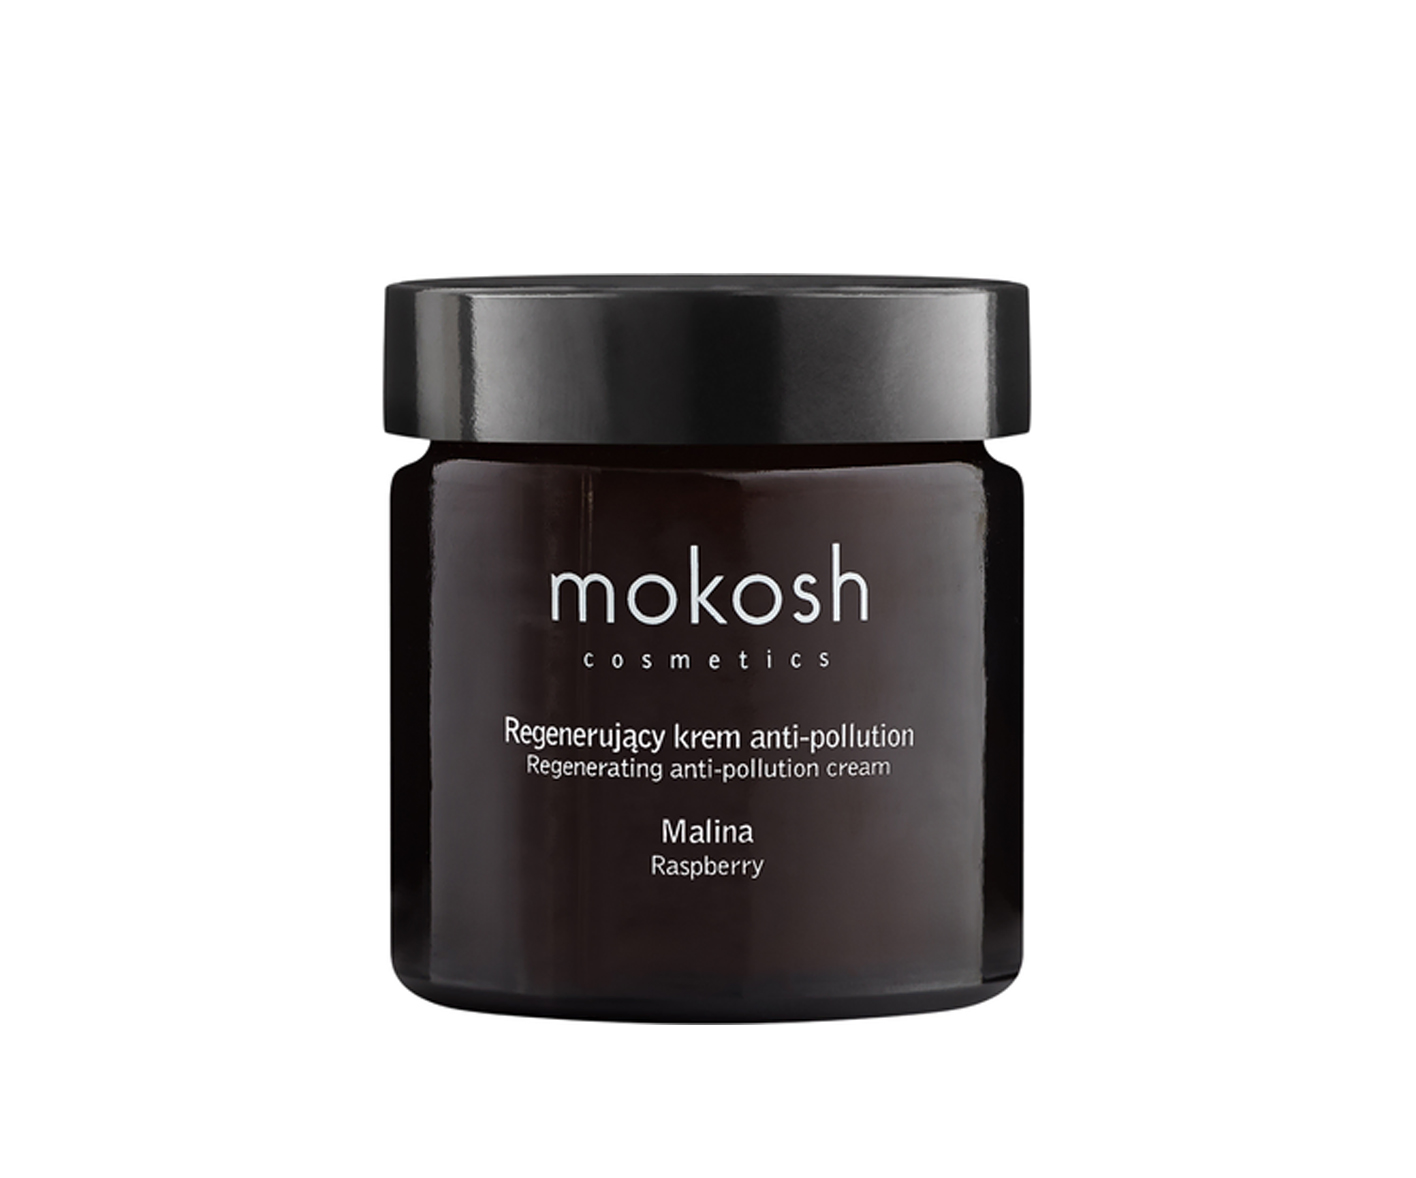 Mokosh Cosmetics, Regenerujący krem do twarzy anti-pollution Malina do cery naczynkowej